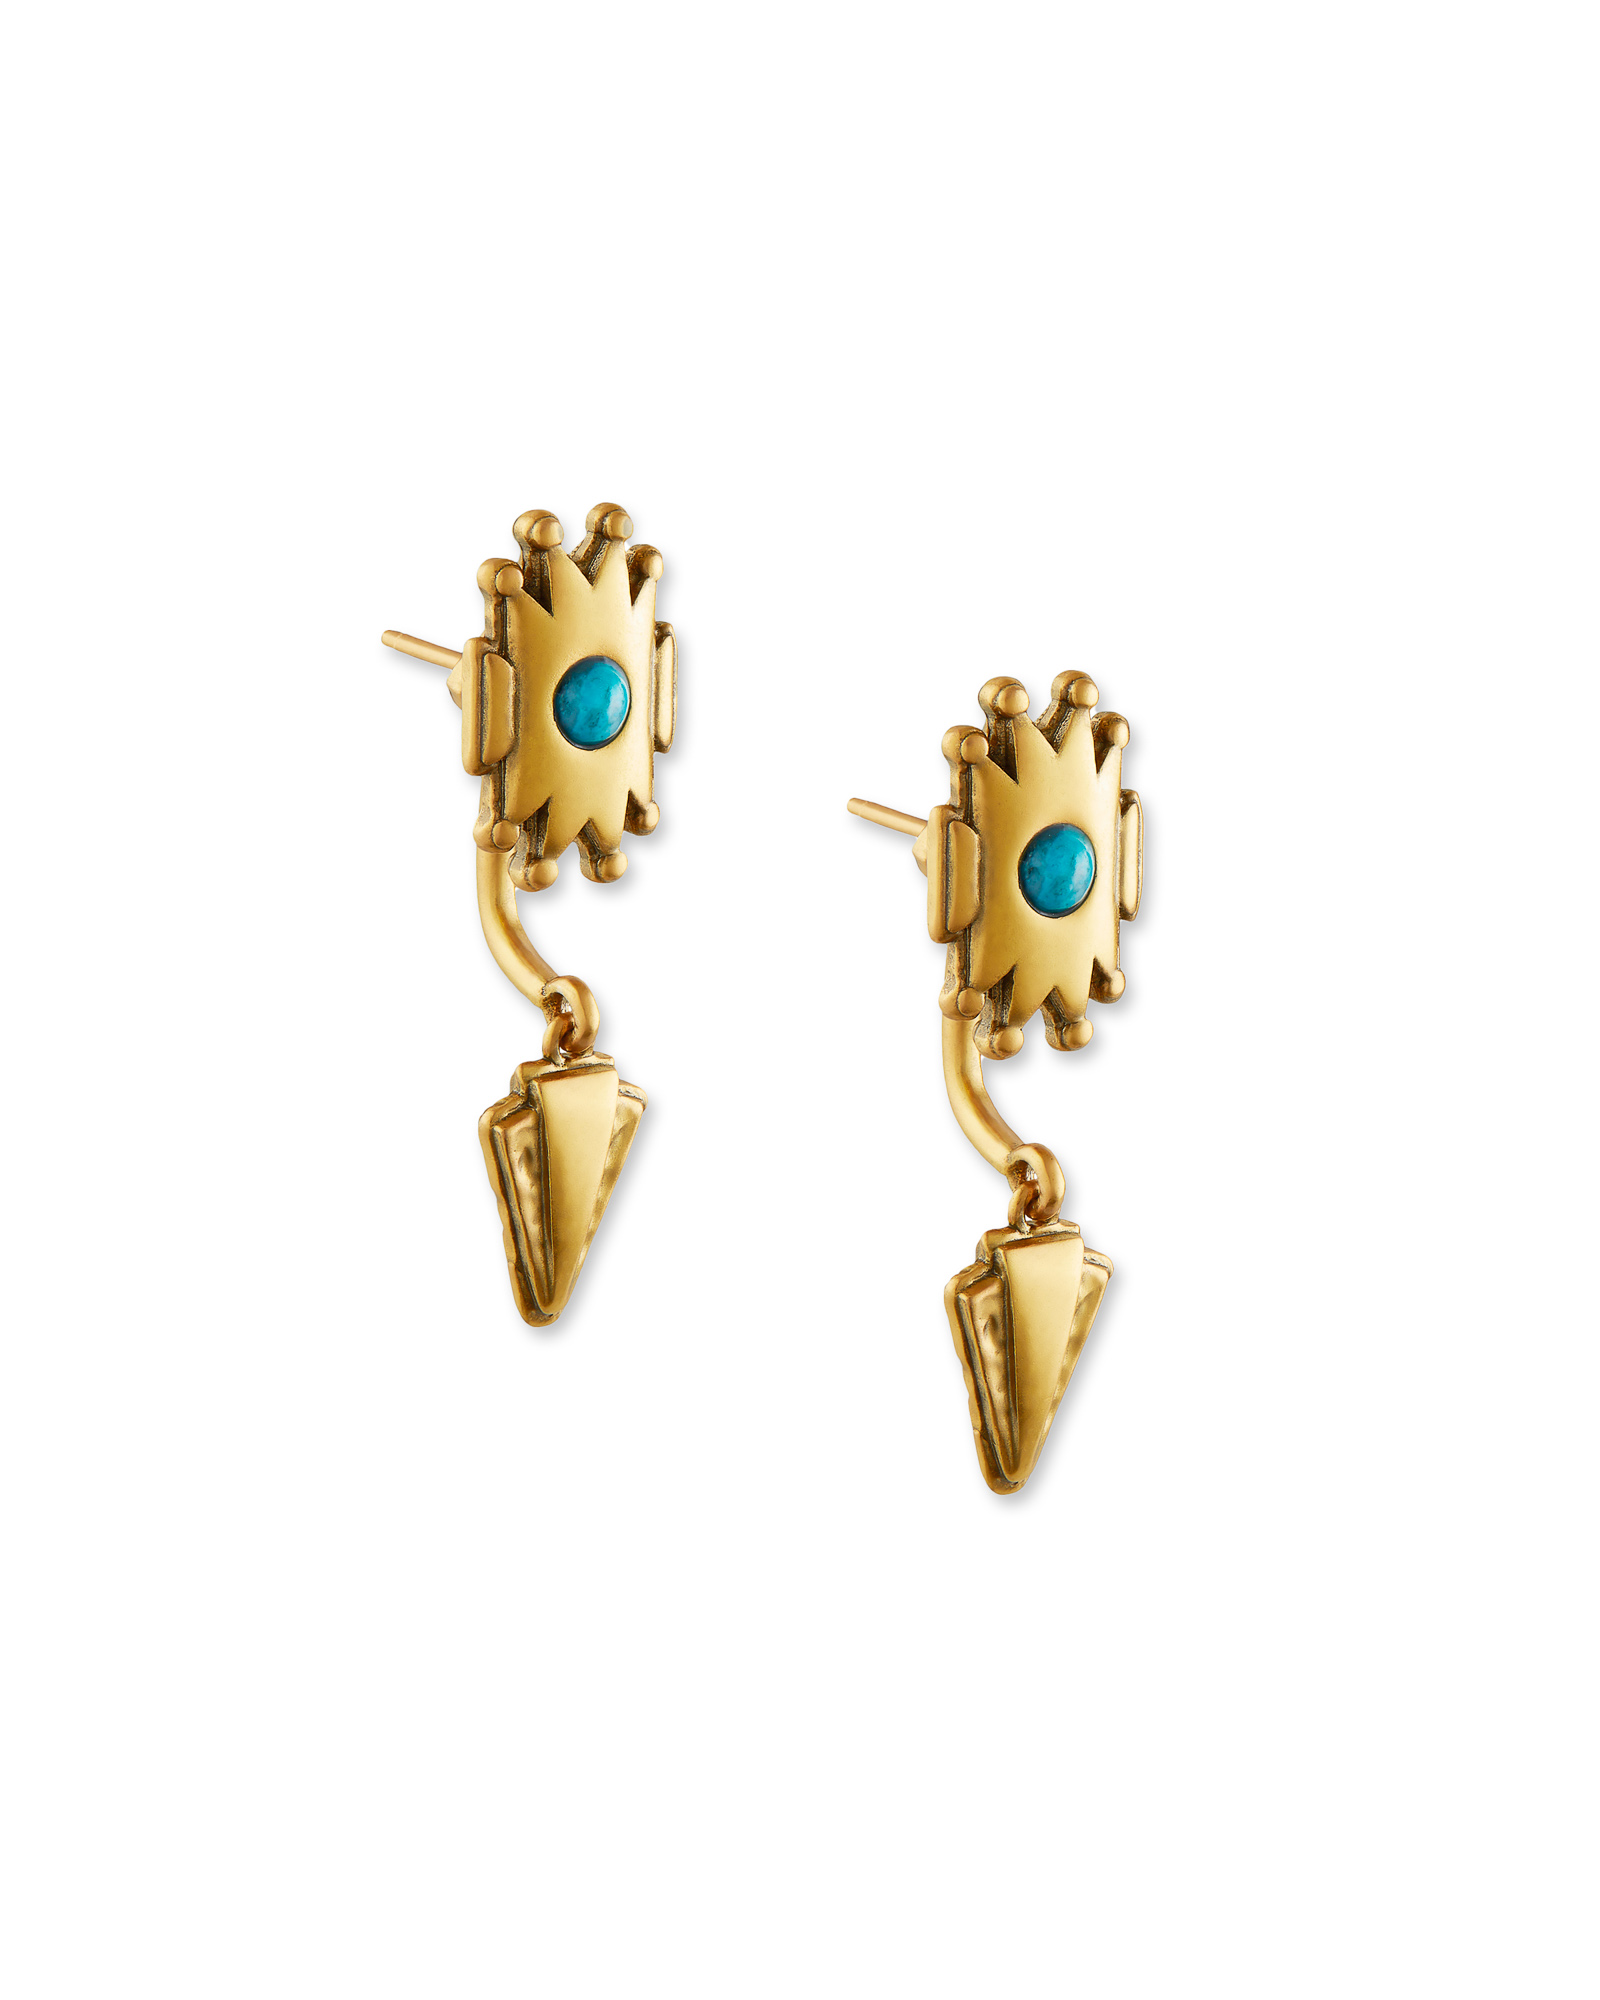 Shiva Vintage Gold Ear Jacket Earrings in Teal Howlite | Kendra Scott